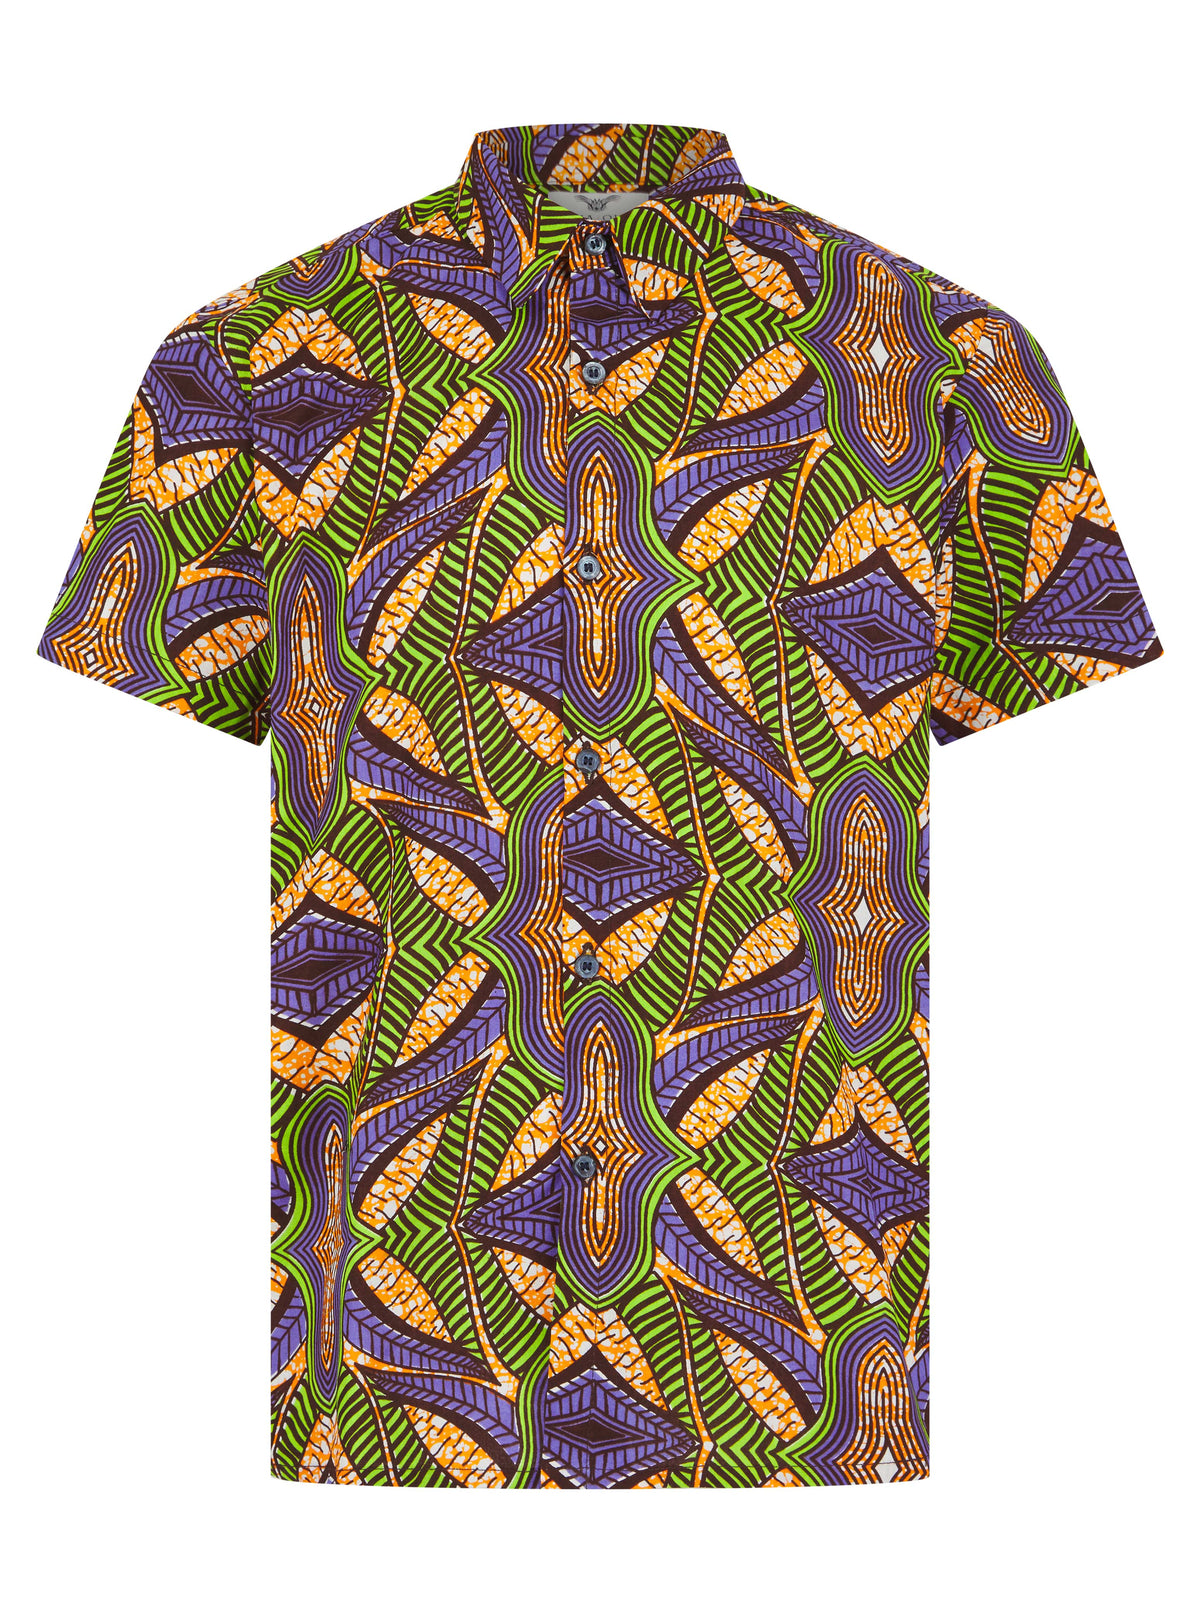 Men's African print shirt